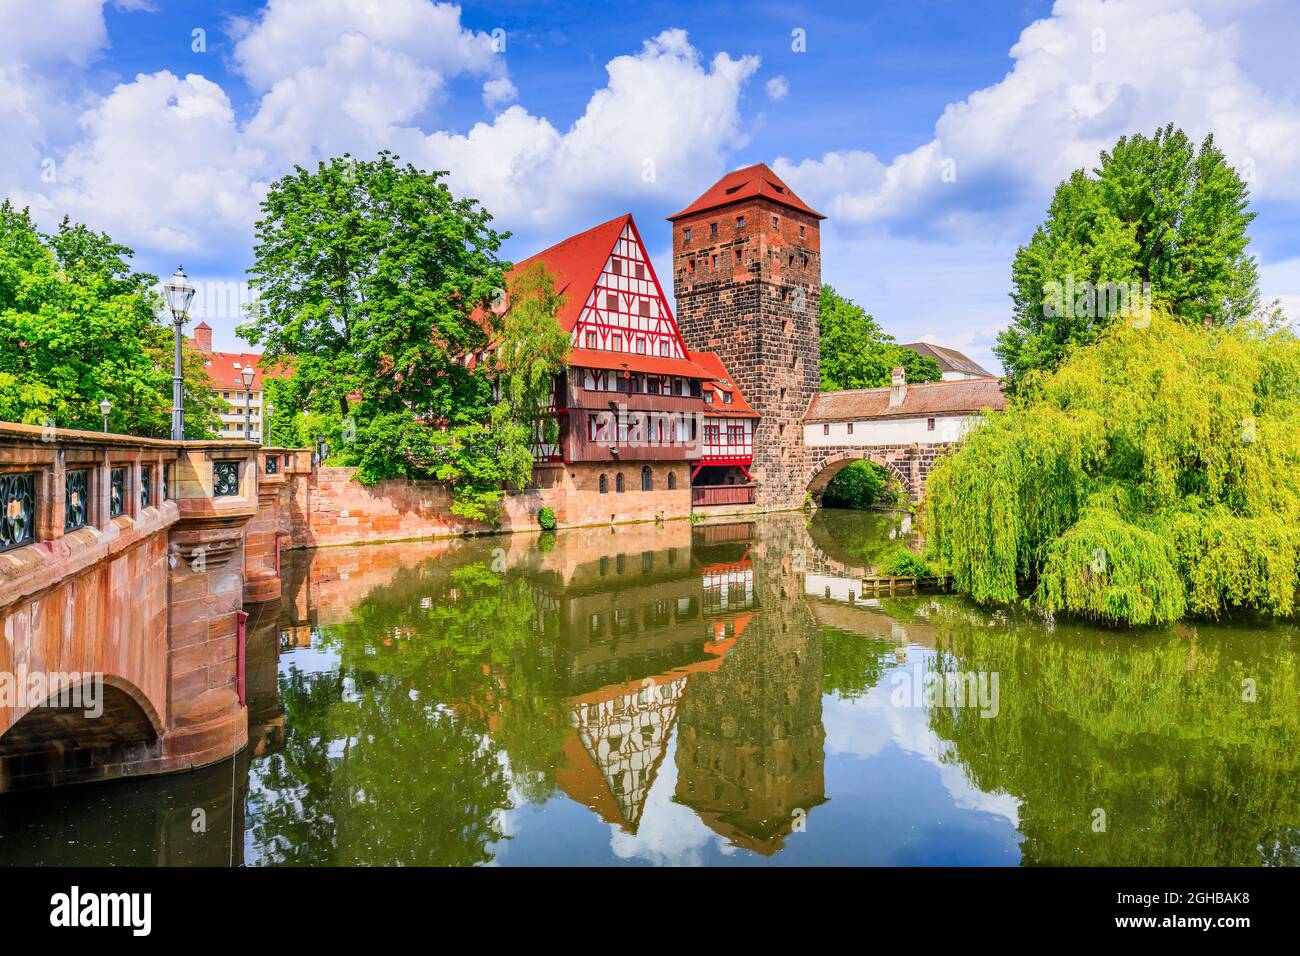 Nuremberg, Allemagne. Le magasin de vin (Weinstadel) sur les rives de la rivière Pegnitz. Banque D'Images